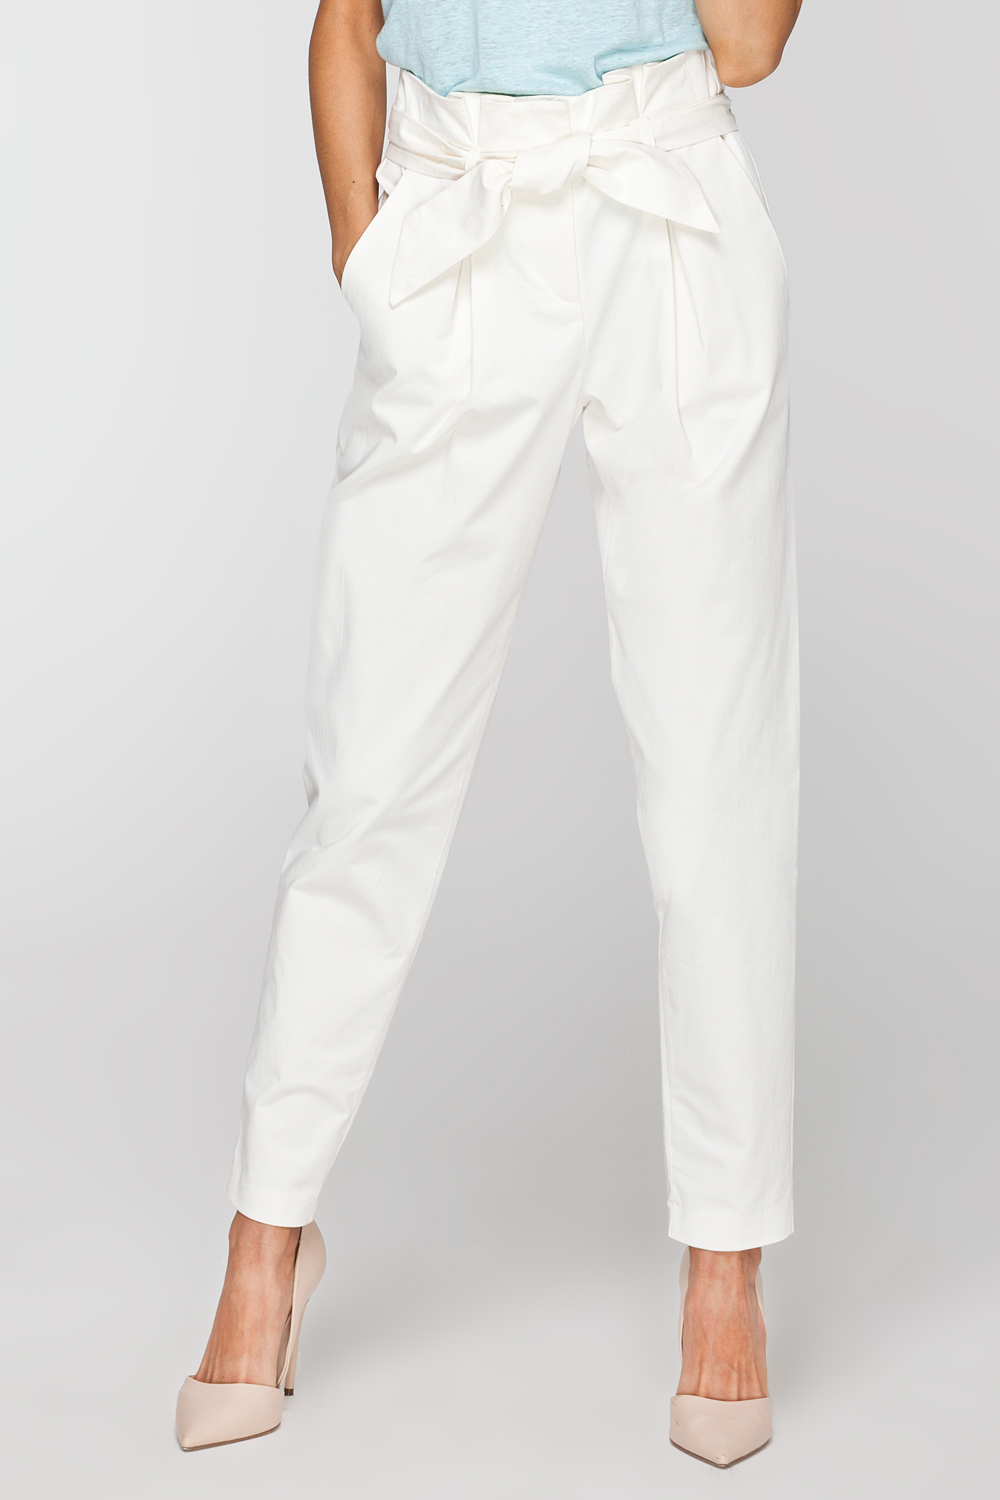 Классические белые брюки